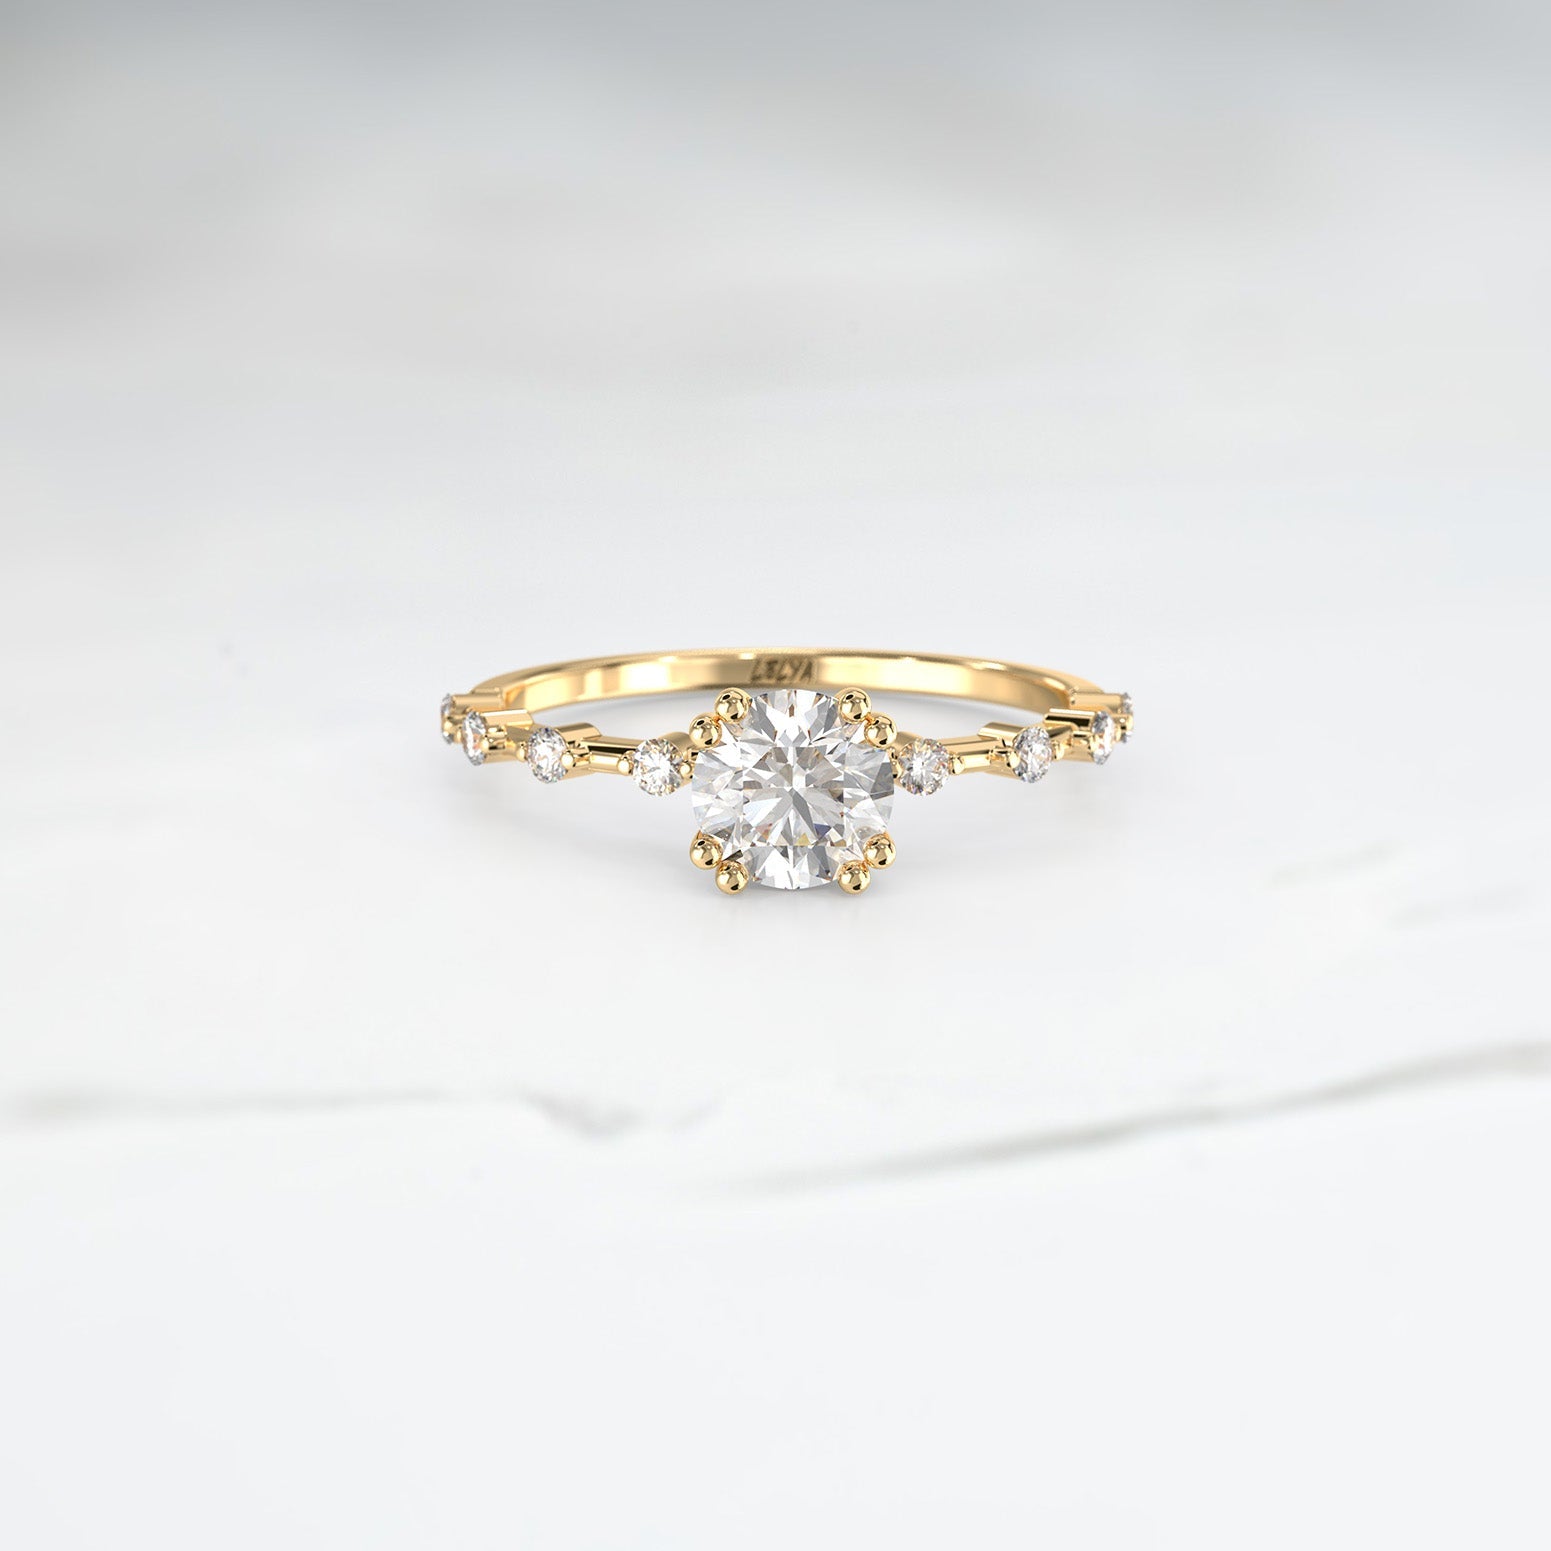 Customisable Ice Band - Lelya - bespoke engagement and wedding rings made in Scotland, UK